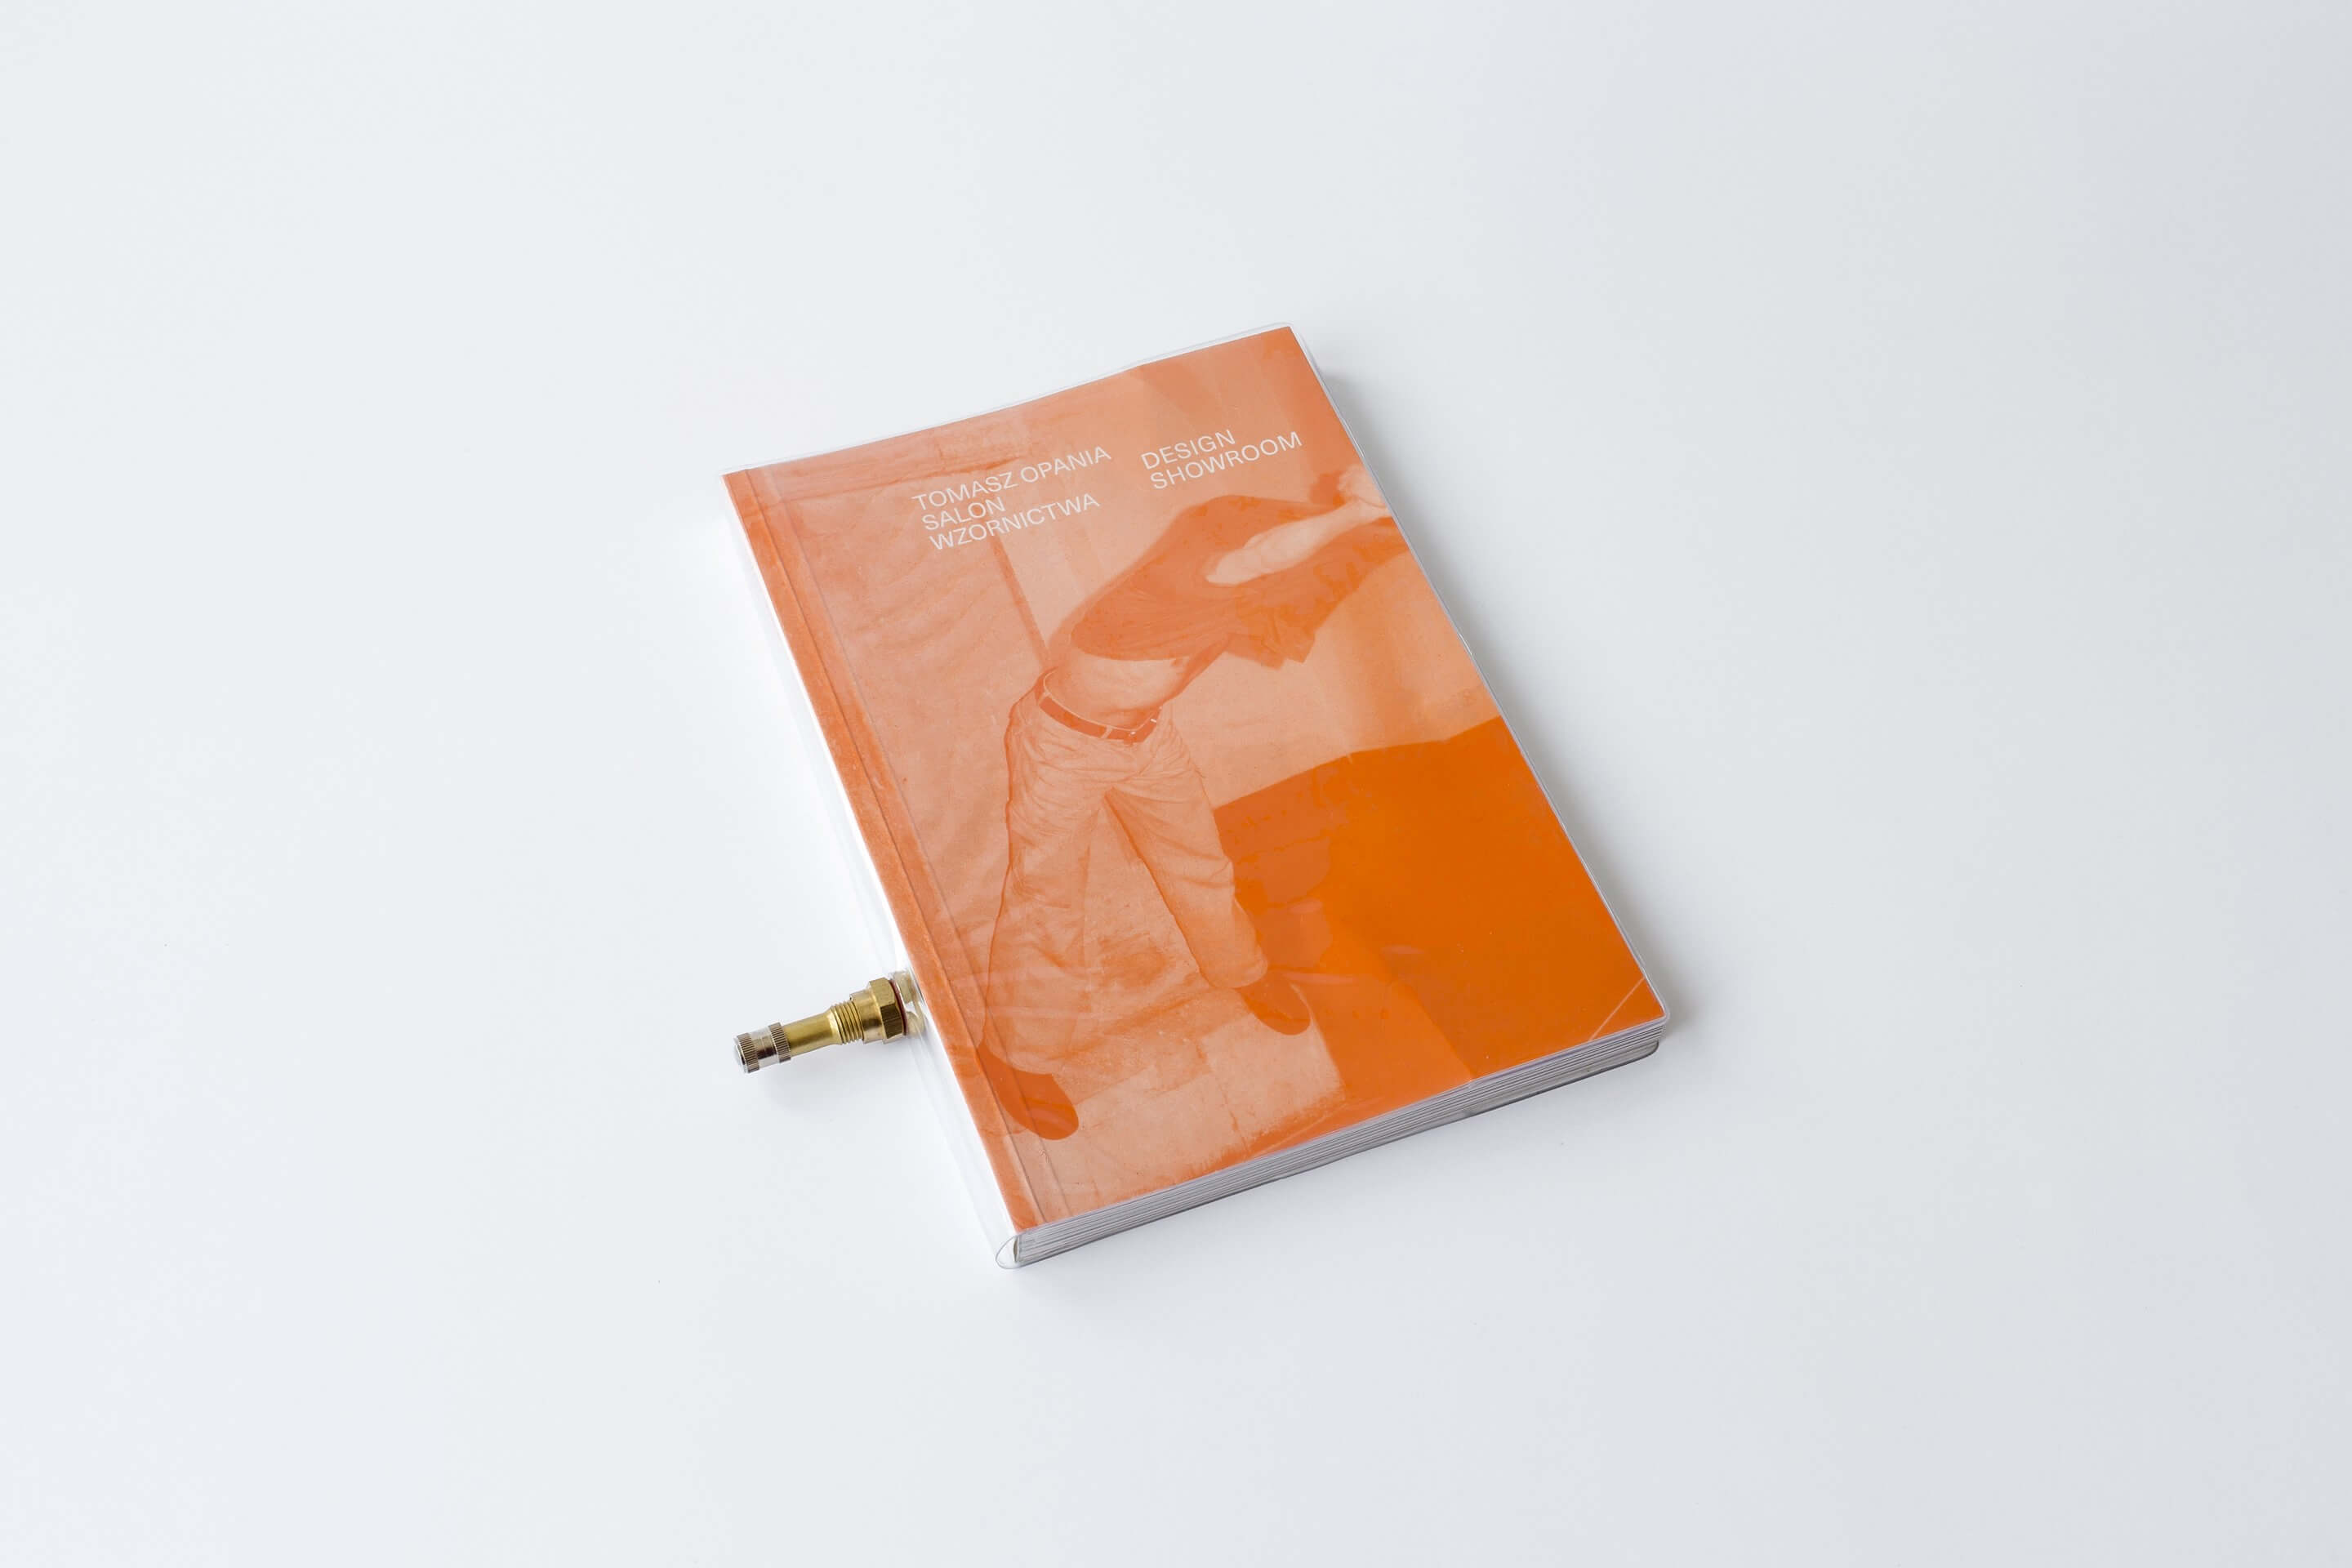 Na białym tle pomarańczowa książka oprawiona w folię, z zaworem do pompowania.